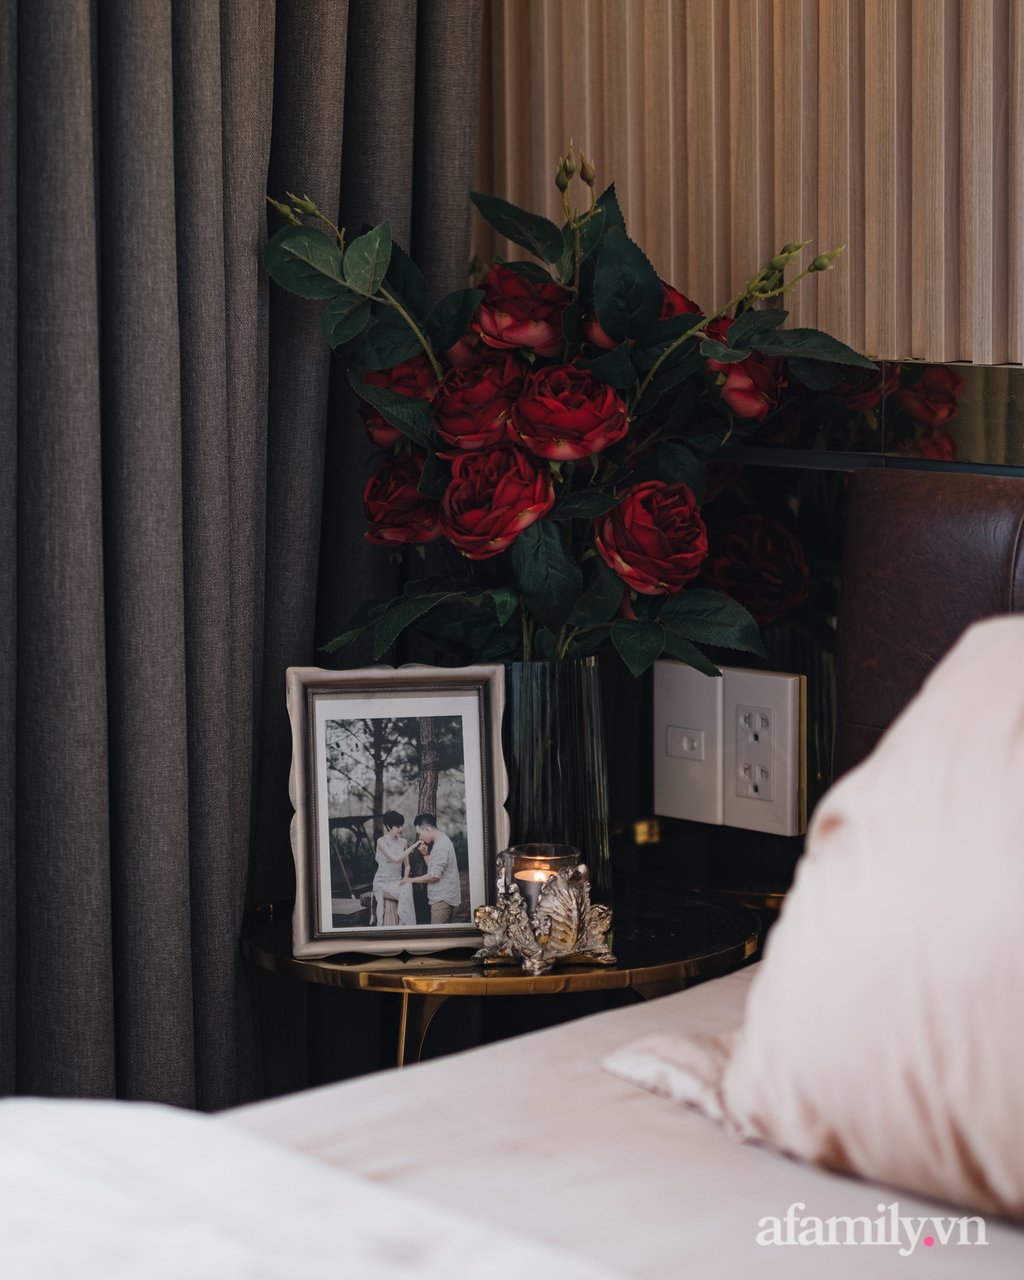 Tab đầu giường được đặt thêm hoa tươi mang đến vẻ đẹp ngọt ngào cho không gian nghỉ ngơi.